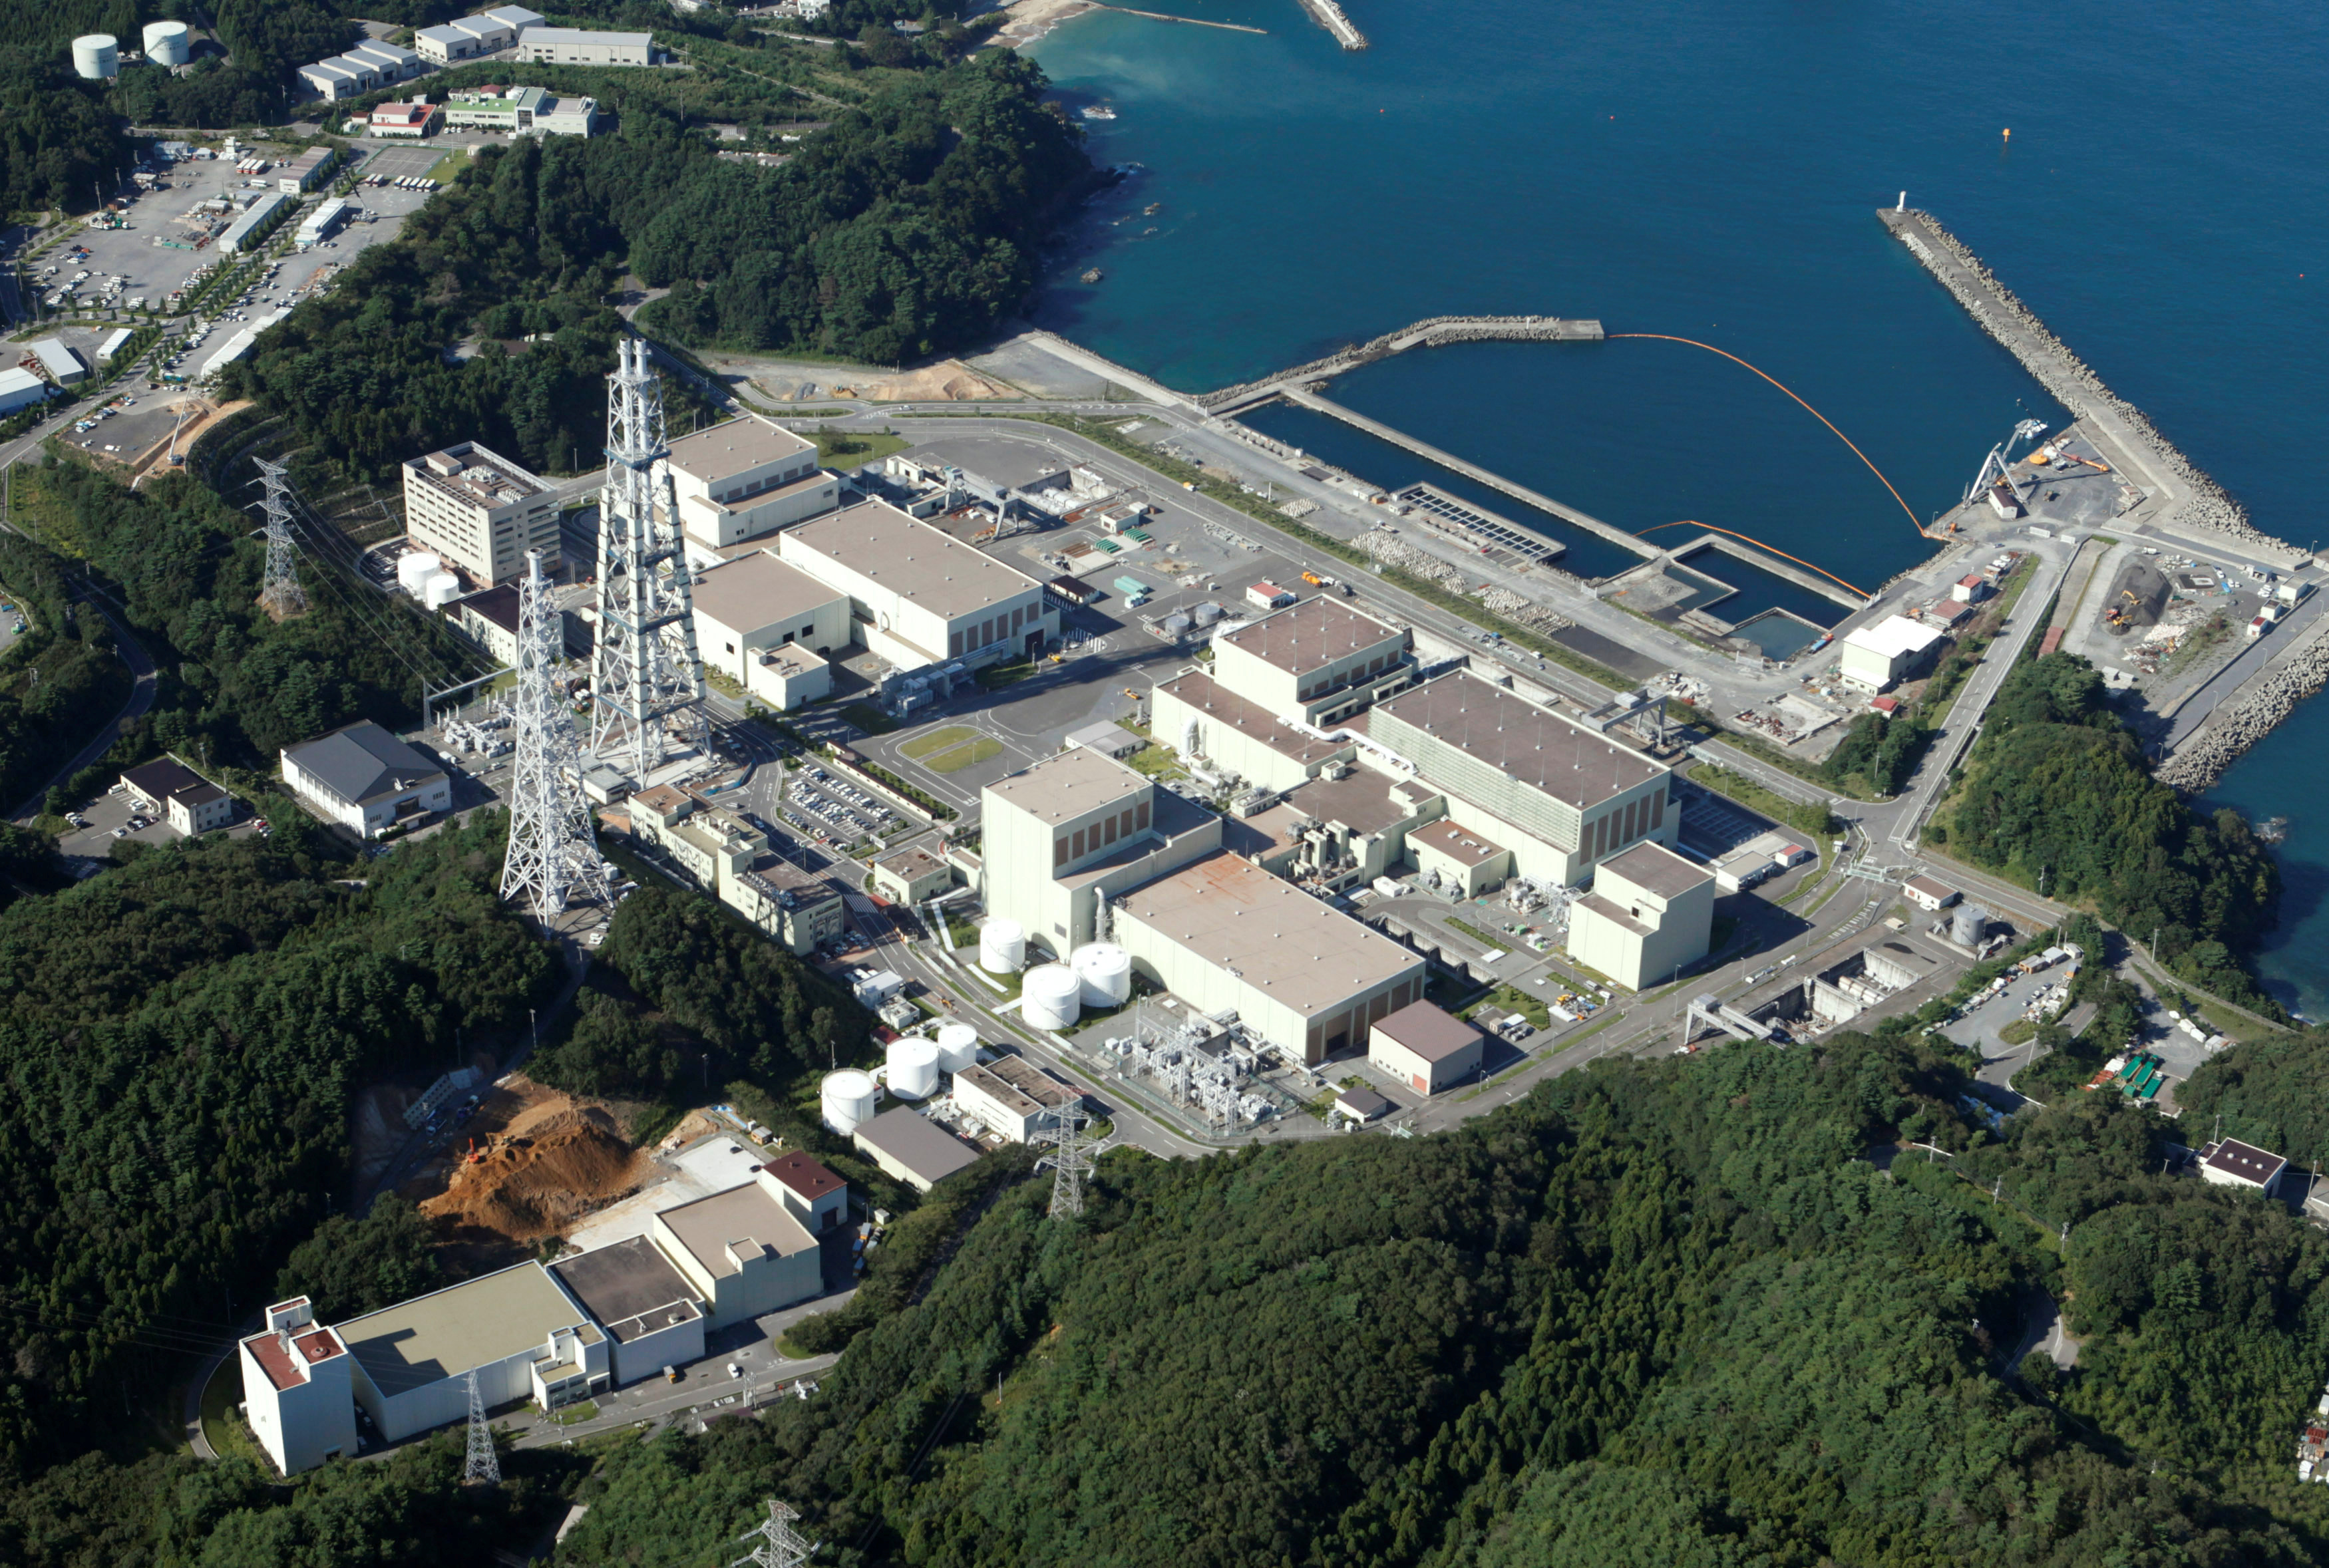 El Gobierno japones asegura que es seguro expeler el agua usada para enfriar los reactores nucleares en el océano pacífico.